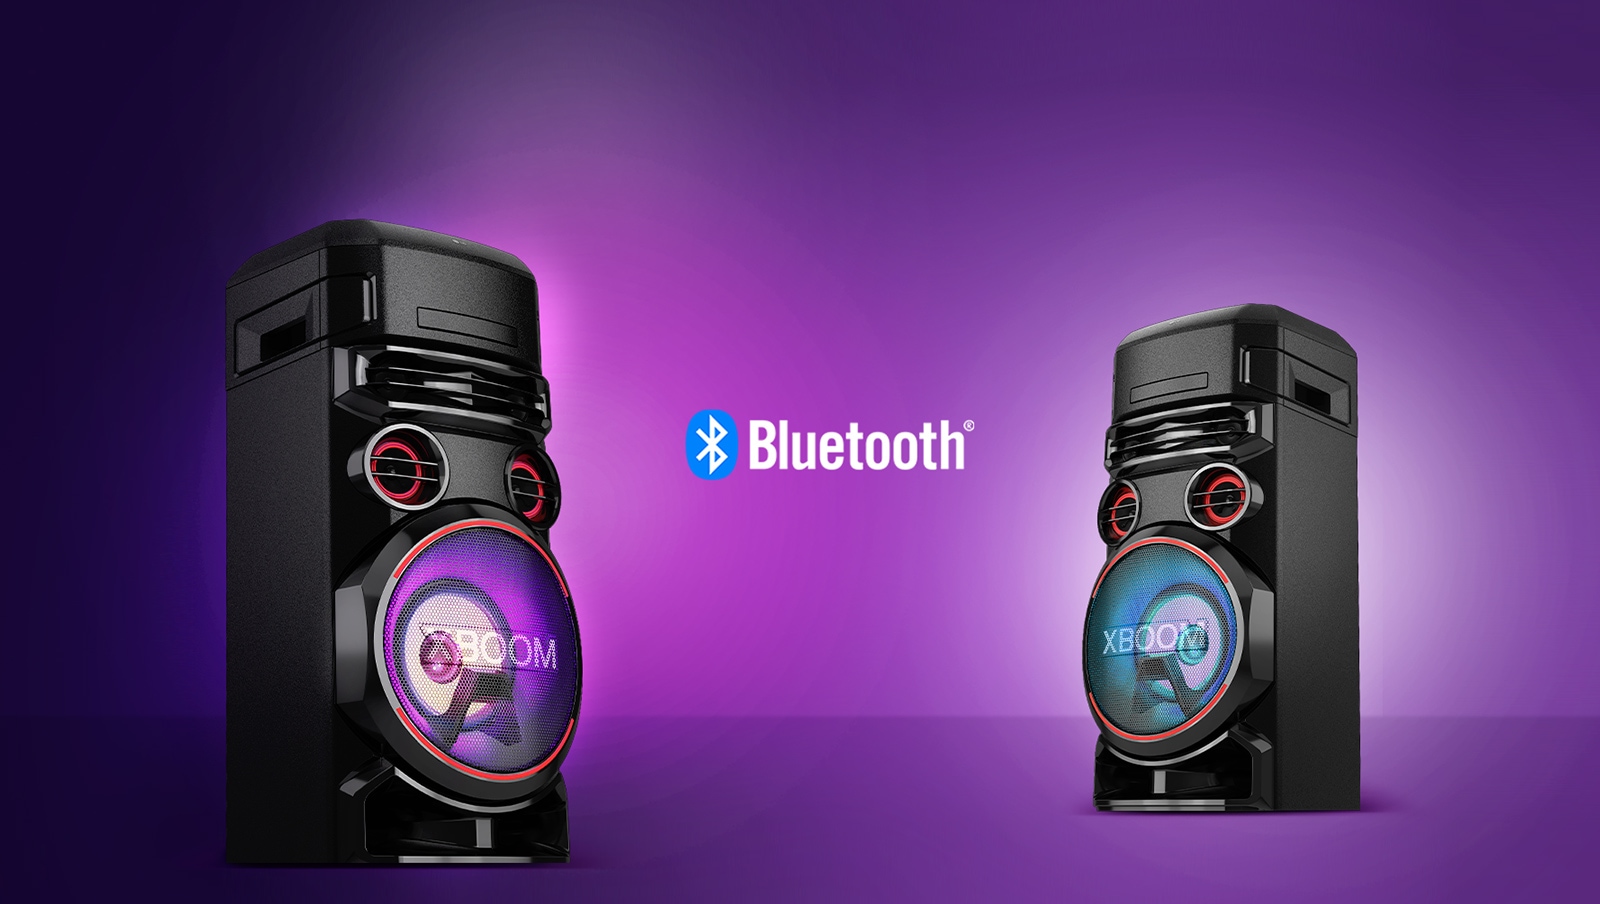 جهازا LG XBOOM يواجهان بعضهما بعضًا بزوايا قطرية على خلفية أرجوانية مع وجود شعار Bluetooth بينهما.